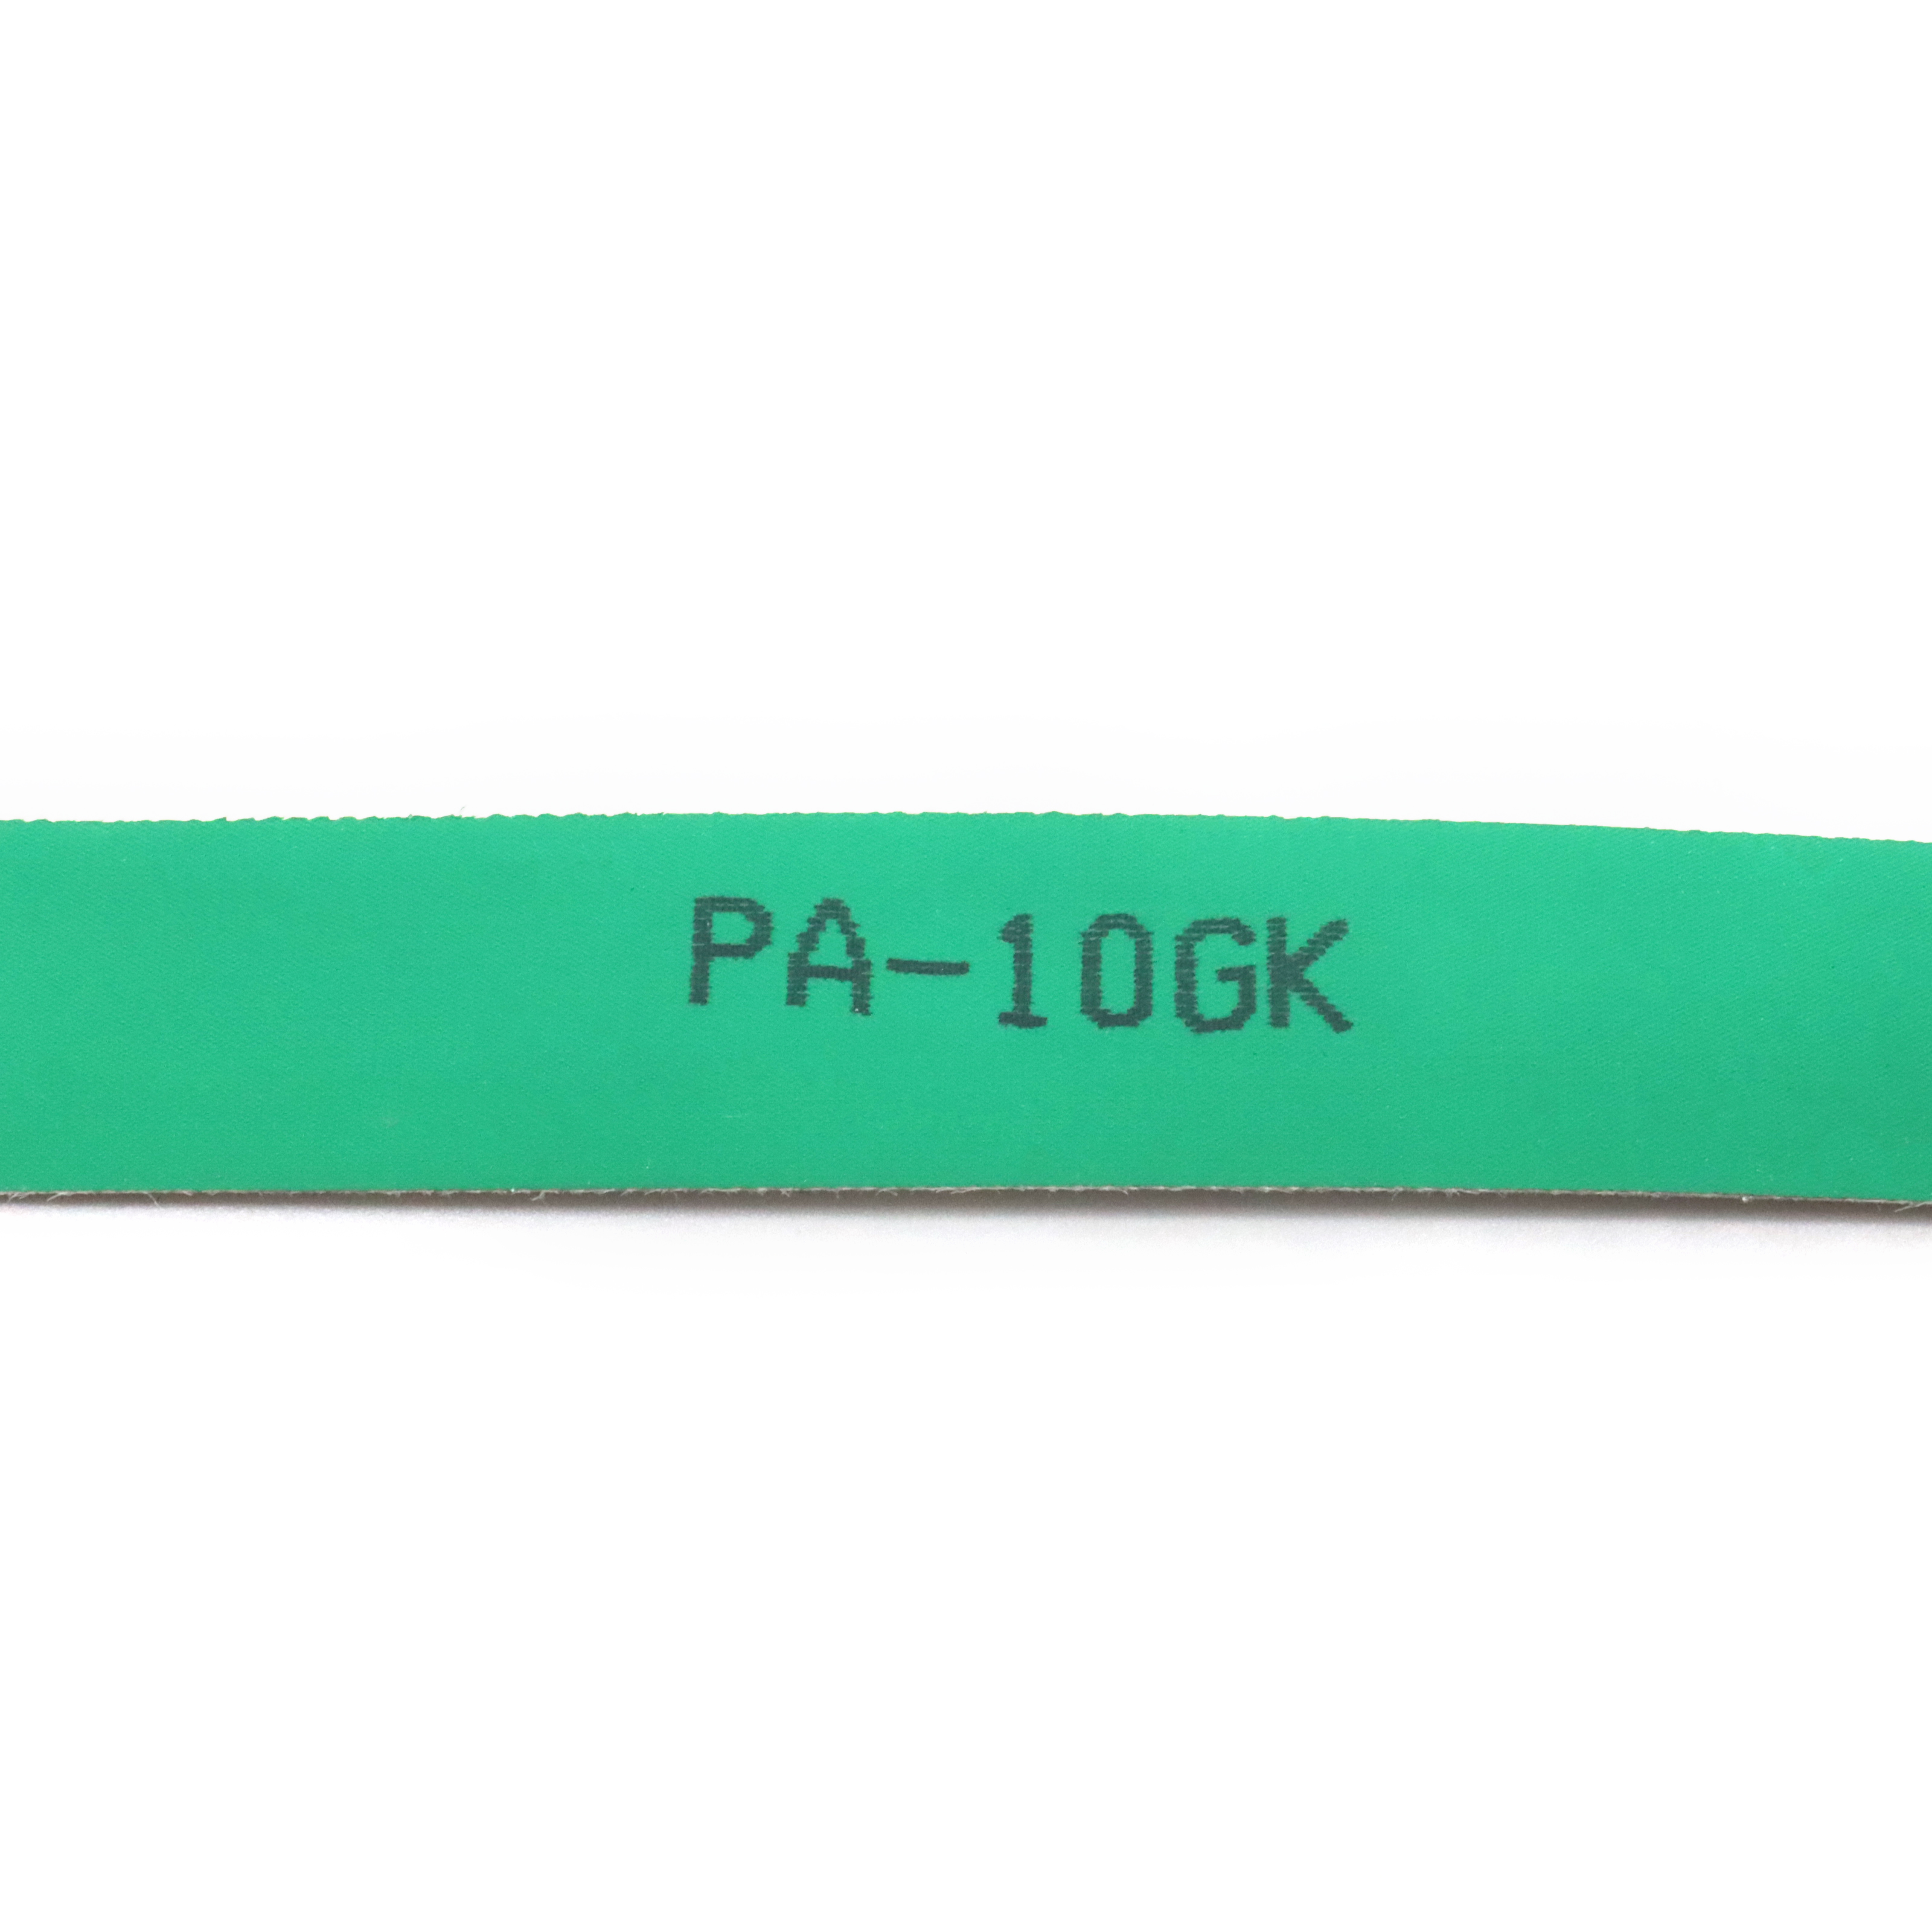 PA-10GK